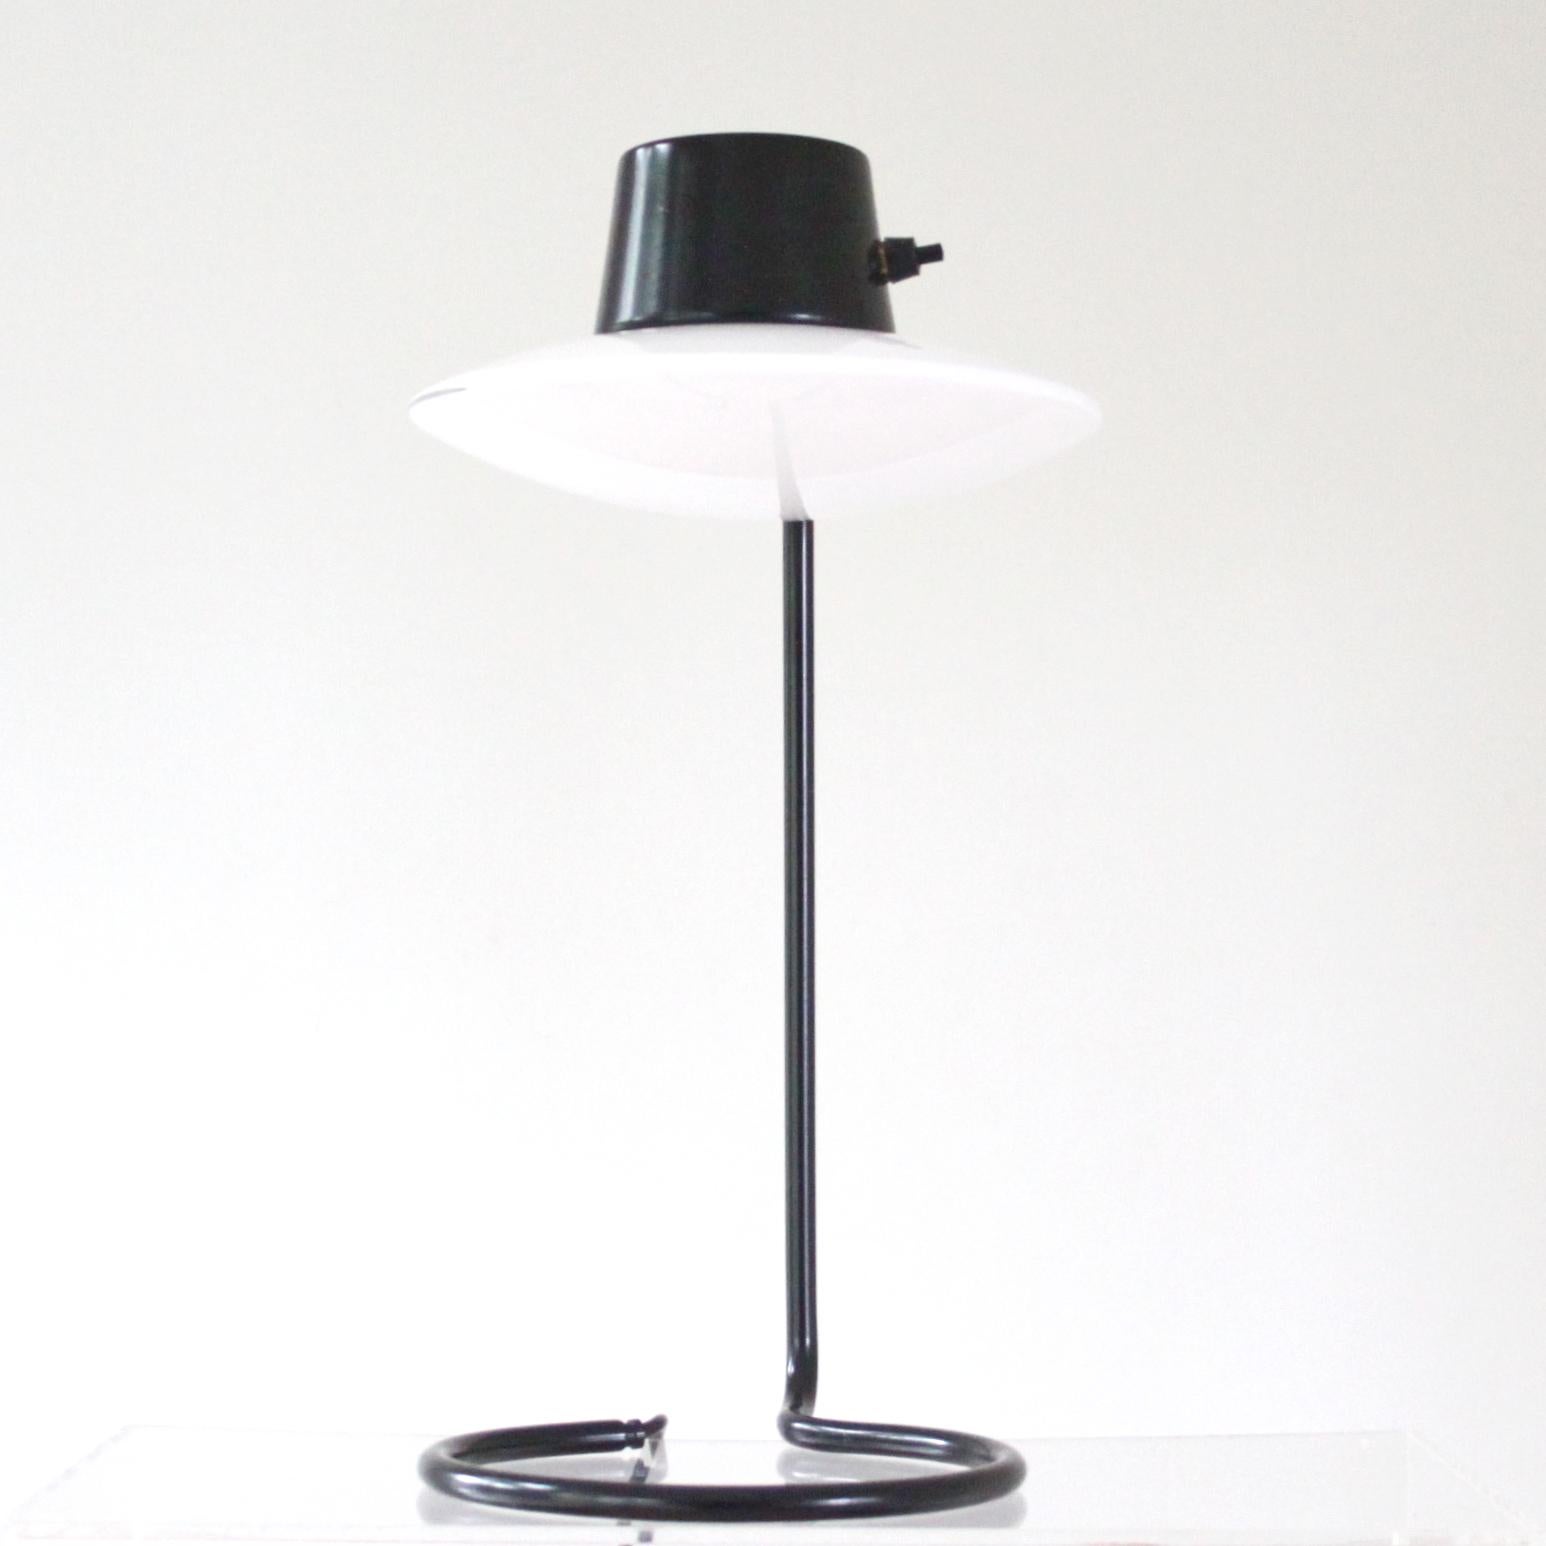 ARNE JACOBSEN & LOUIS POULSEN

SKANDINAVISCH MODERN

Eine schöne Vintage Arne Jacobsen Saint Catherine Tischlampe. 

Diese Lampe wird auch Oxford Tischlampe genannt, hohes Modell mit schwarzem Metallstiel. Bakelit-Schalter, undurchsichtiger